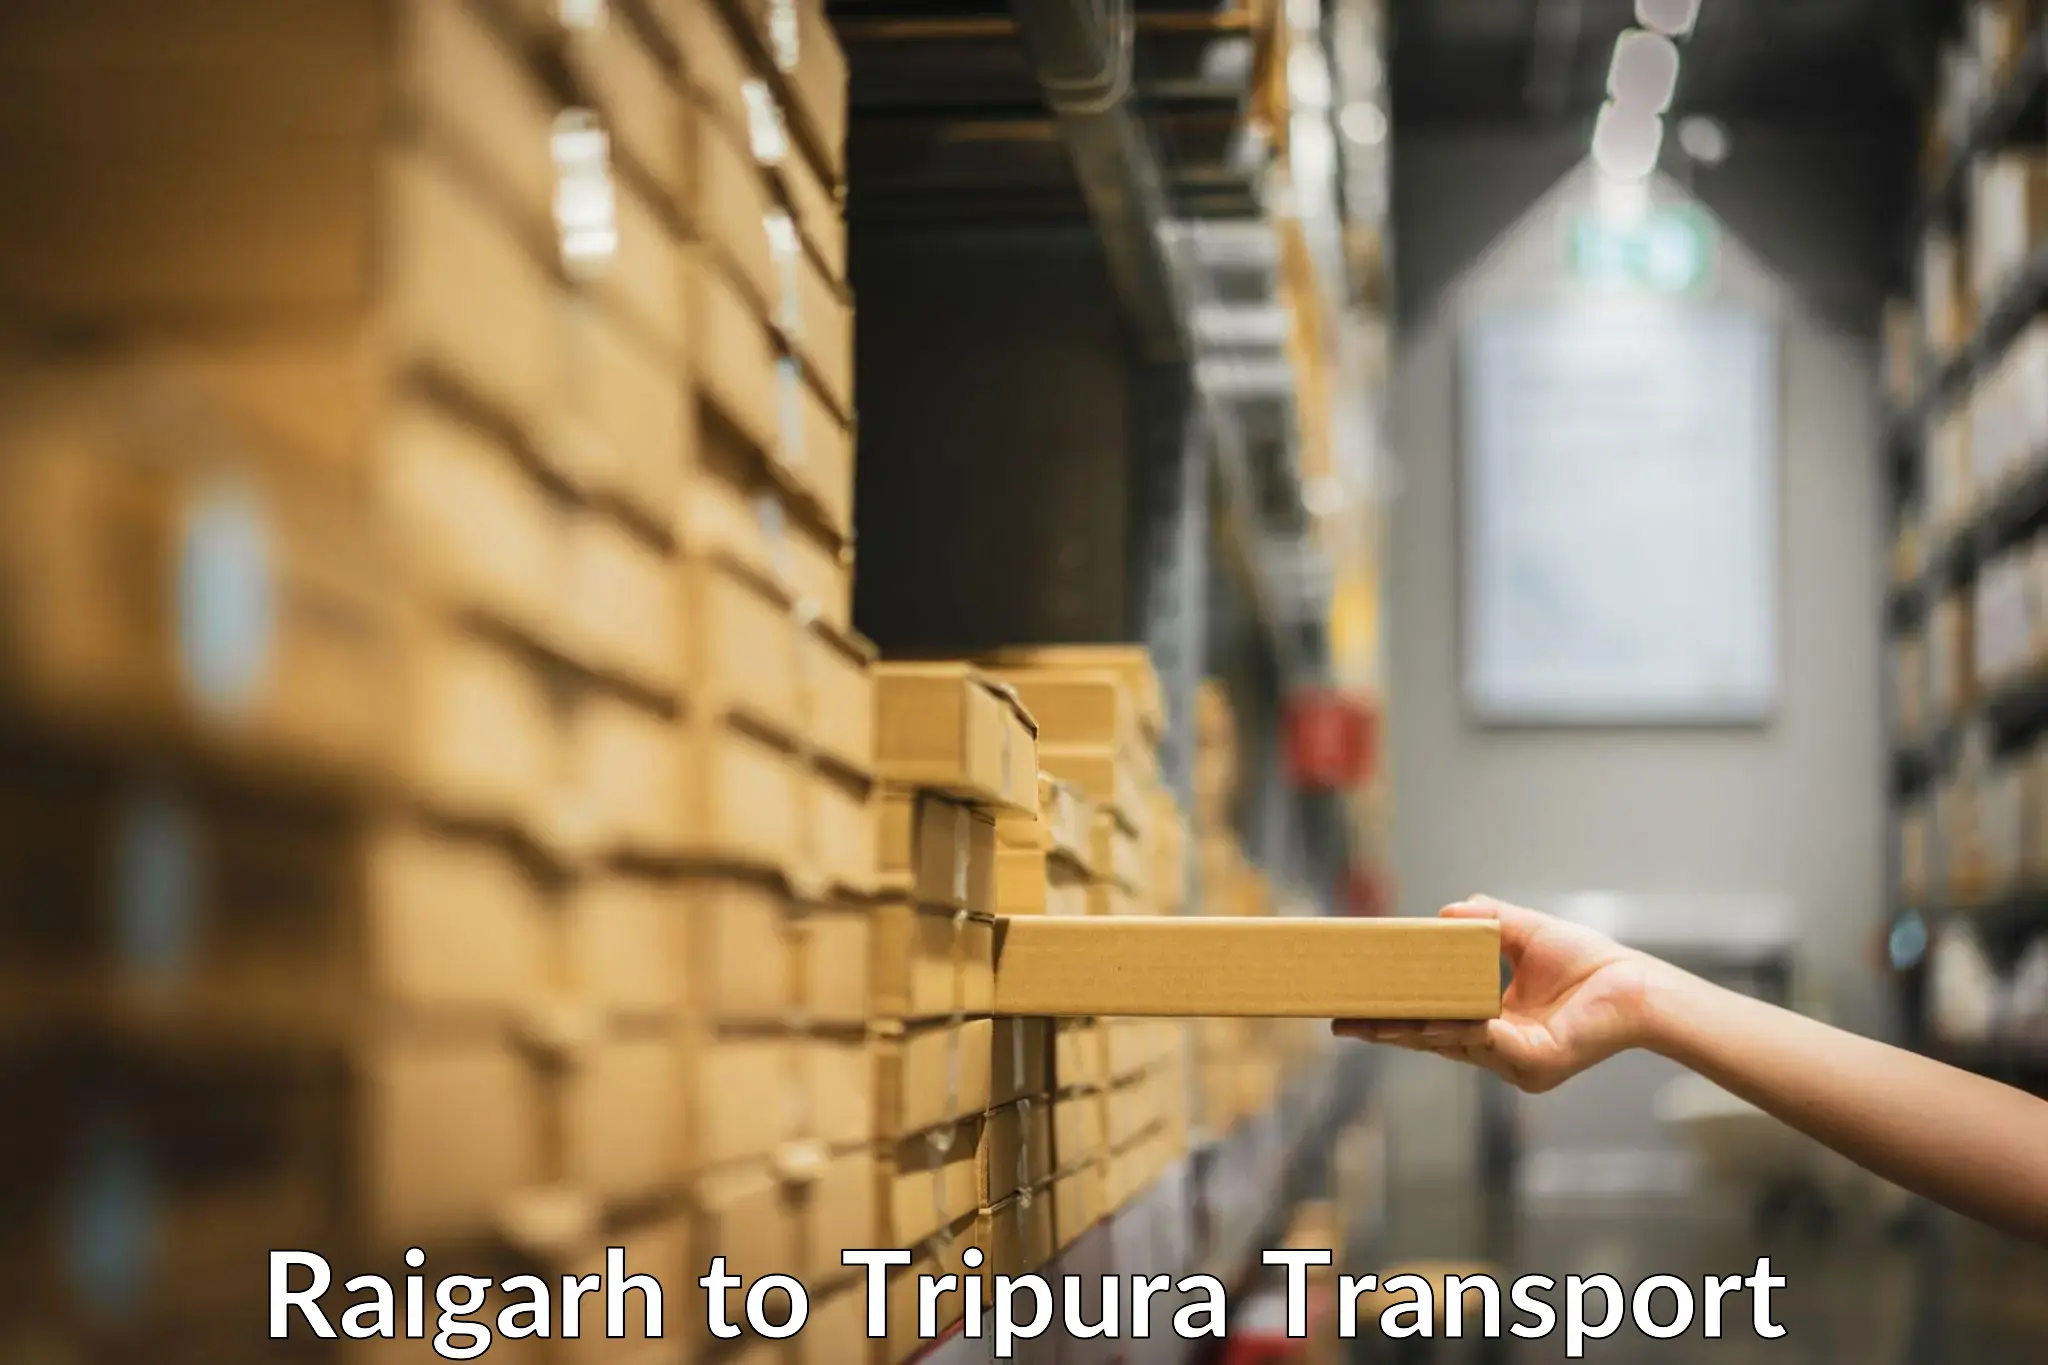 Interstate transport services Raigarh to Amarpur